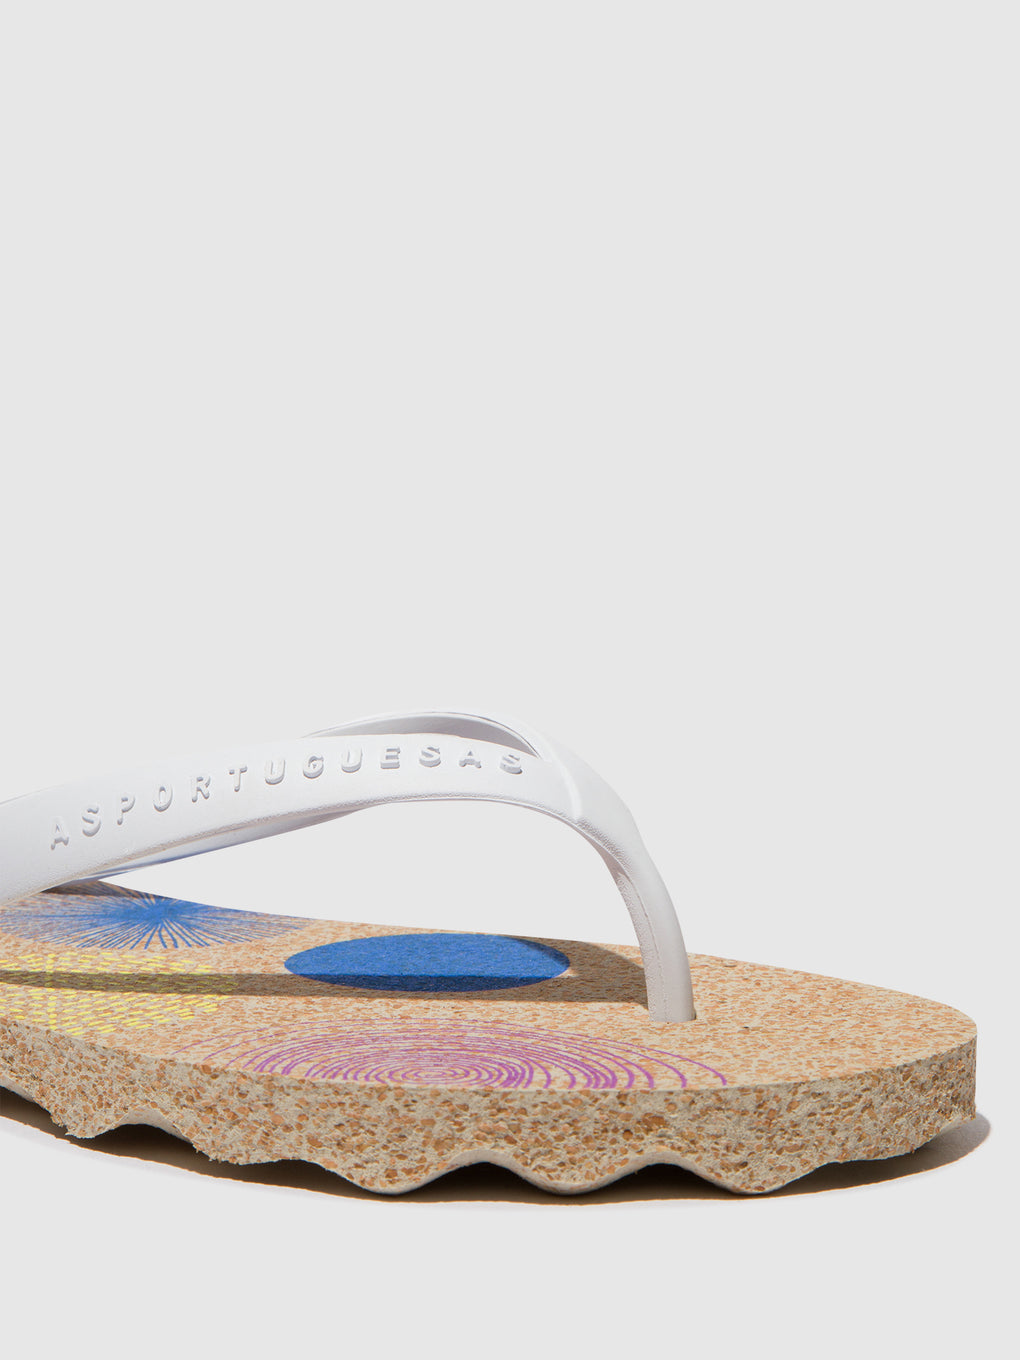 Beach Flip-Flops CORALS Natural & white strap